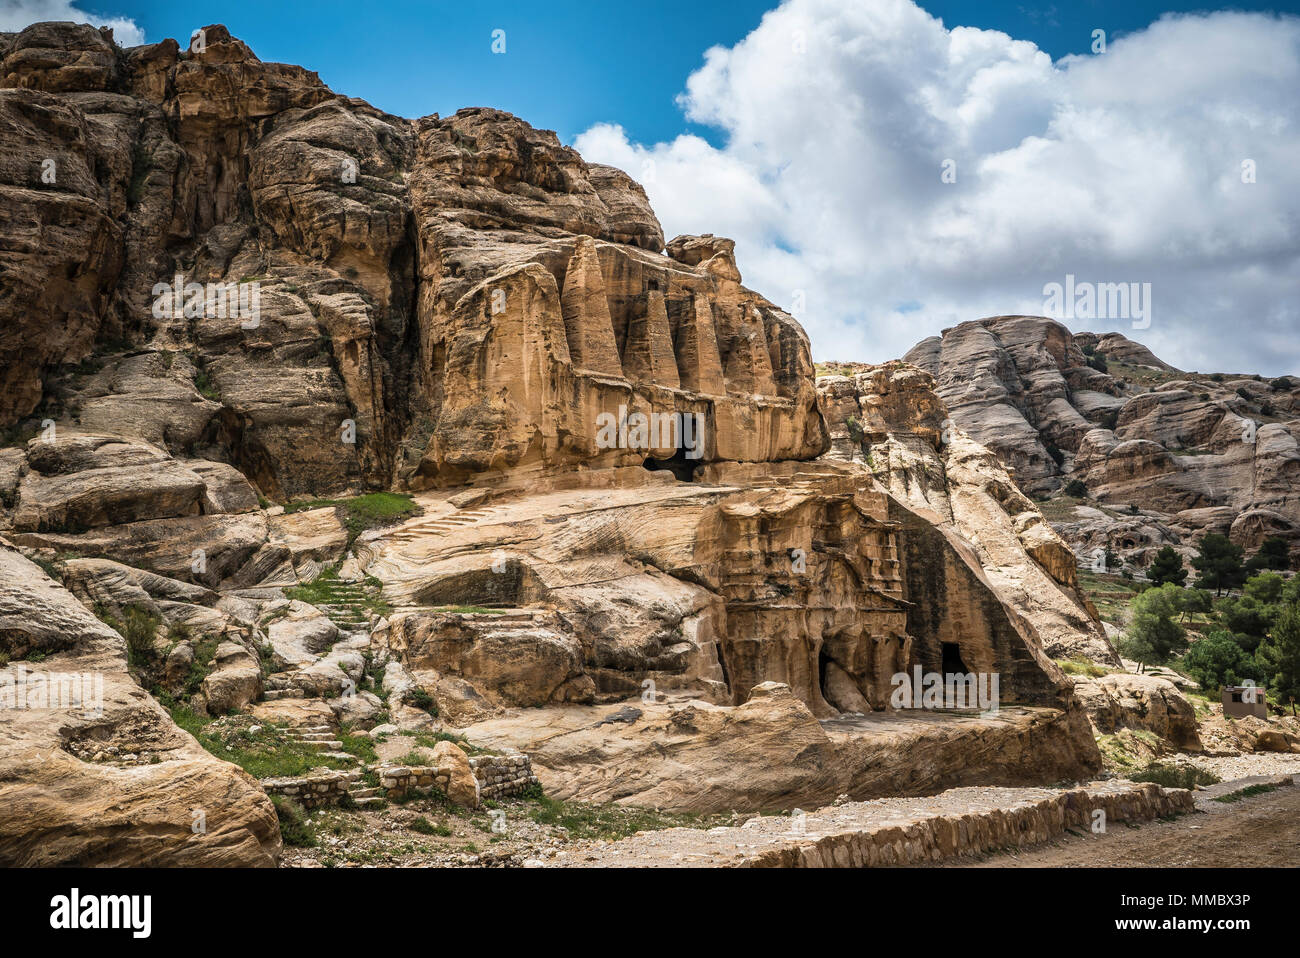 Petra Jordan Mountains view Stock Photo - Alamy